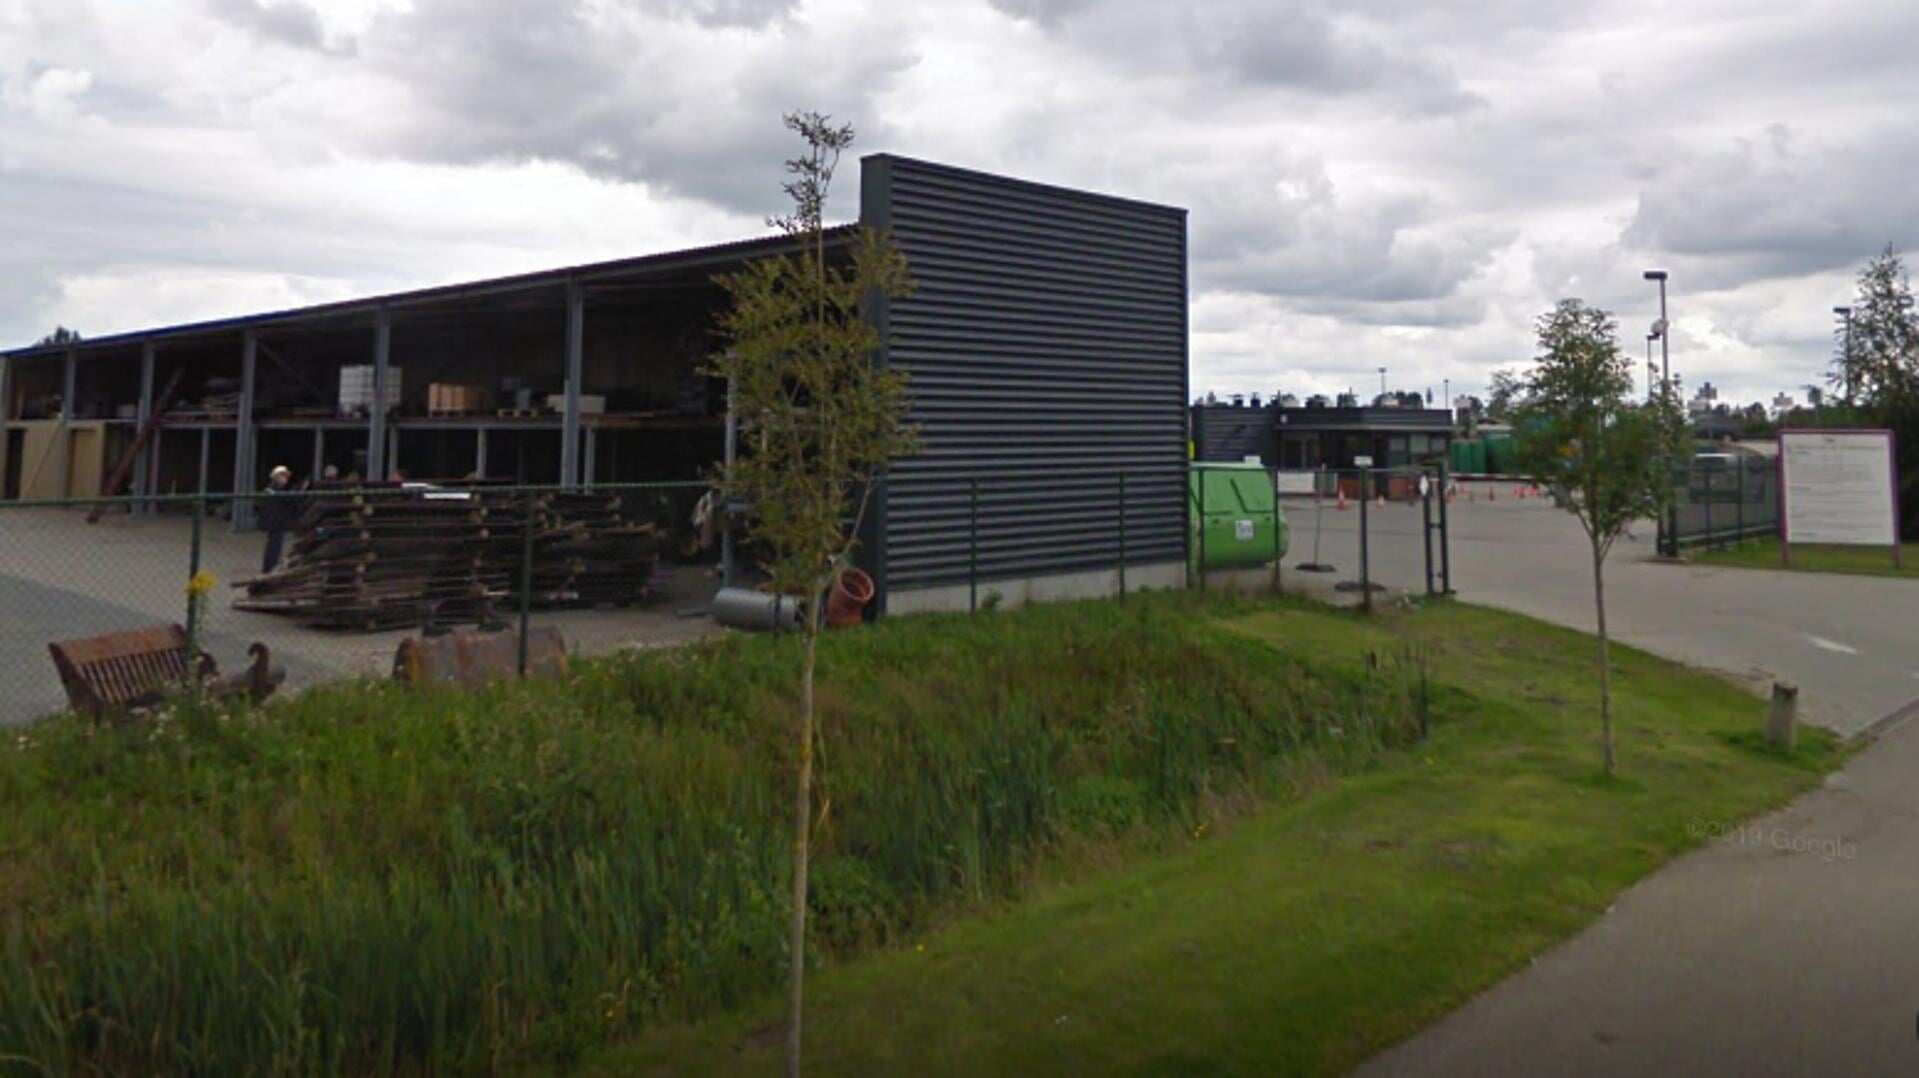 De gemeentewerf in 2e Exloërmond wordt ingericht als tijdelijke noodopvang. (foto: Google Maps)